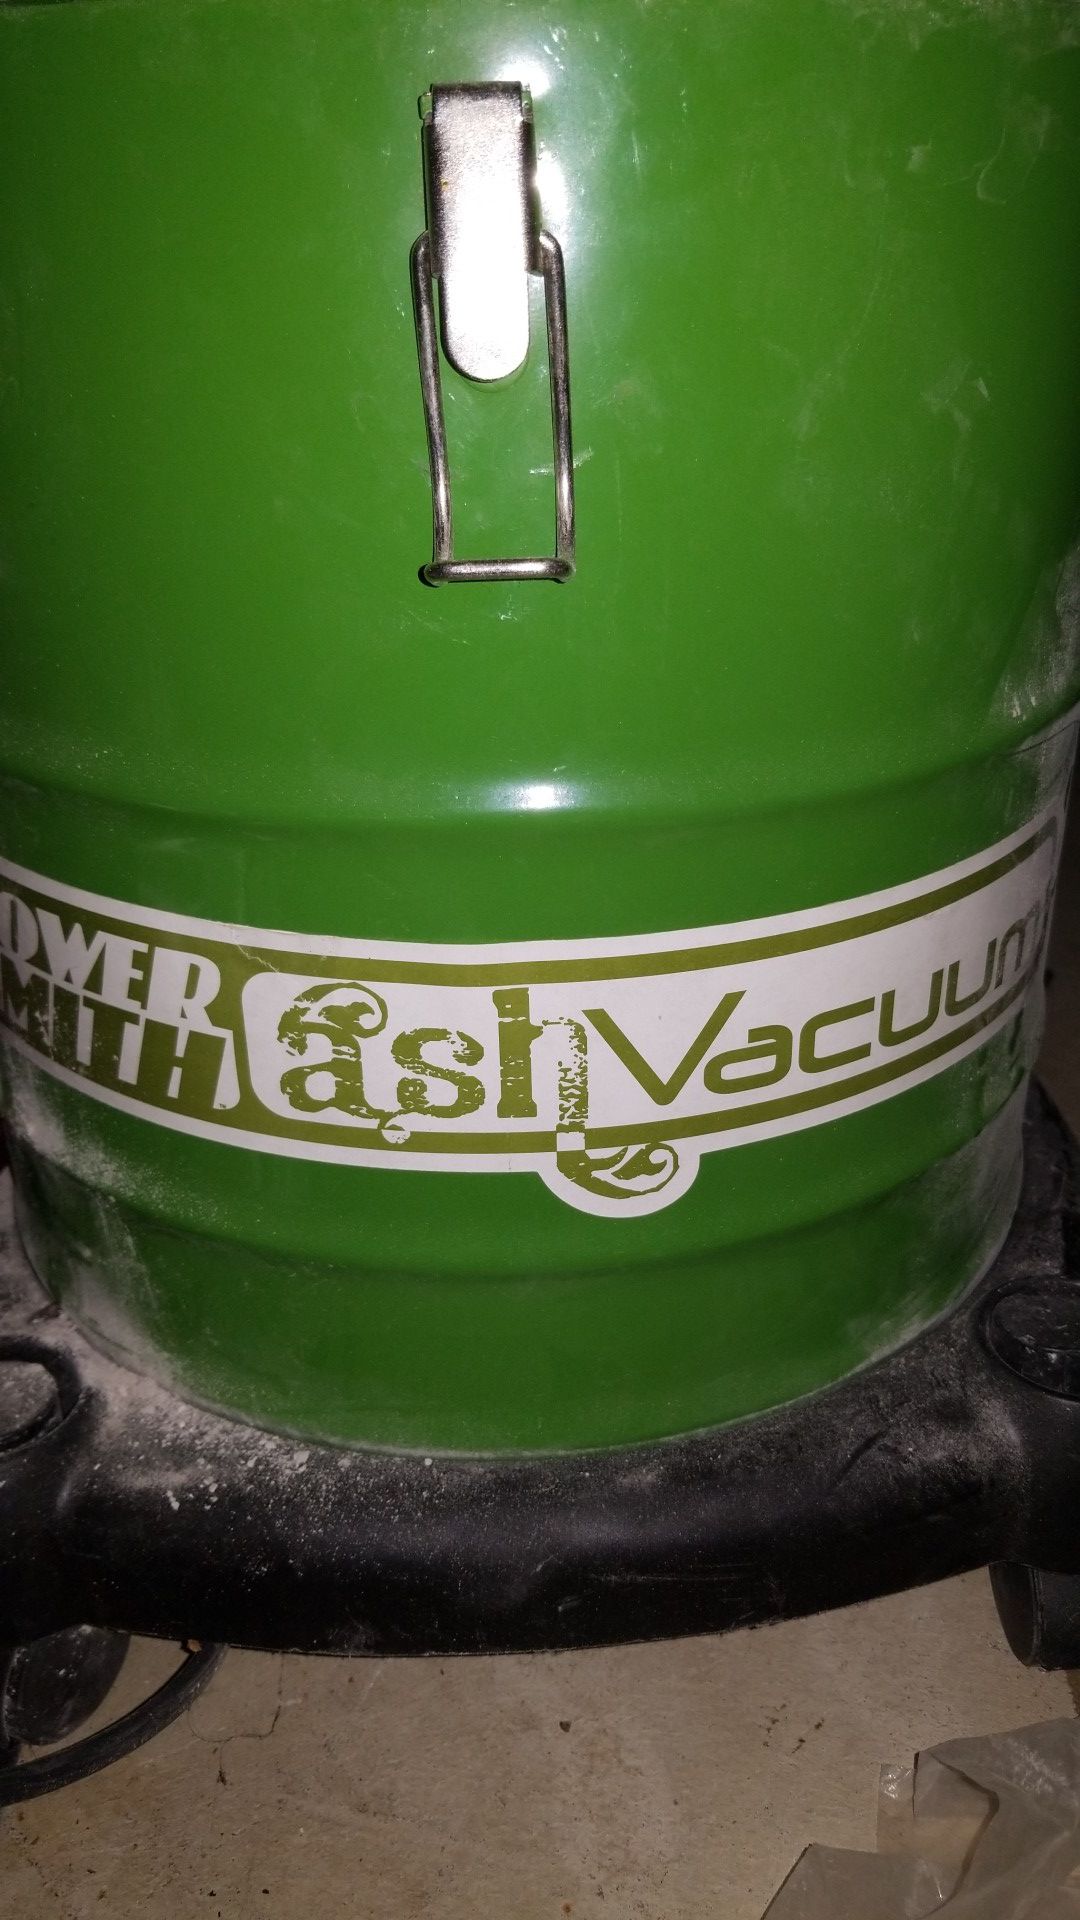 Ash vacuum